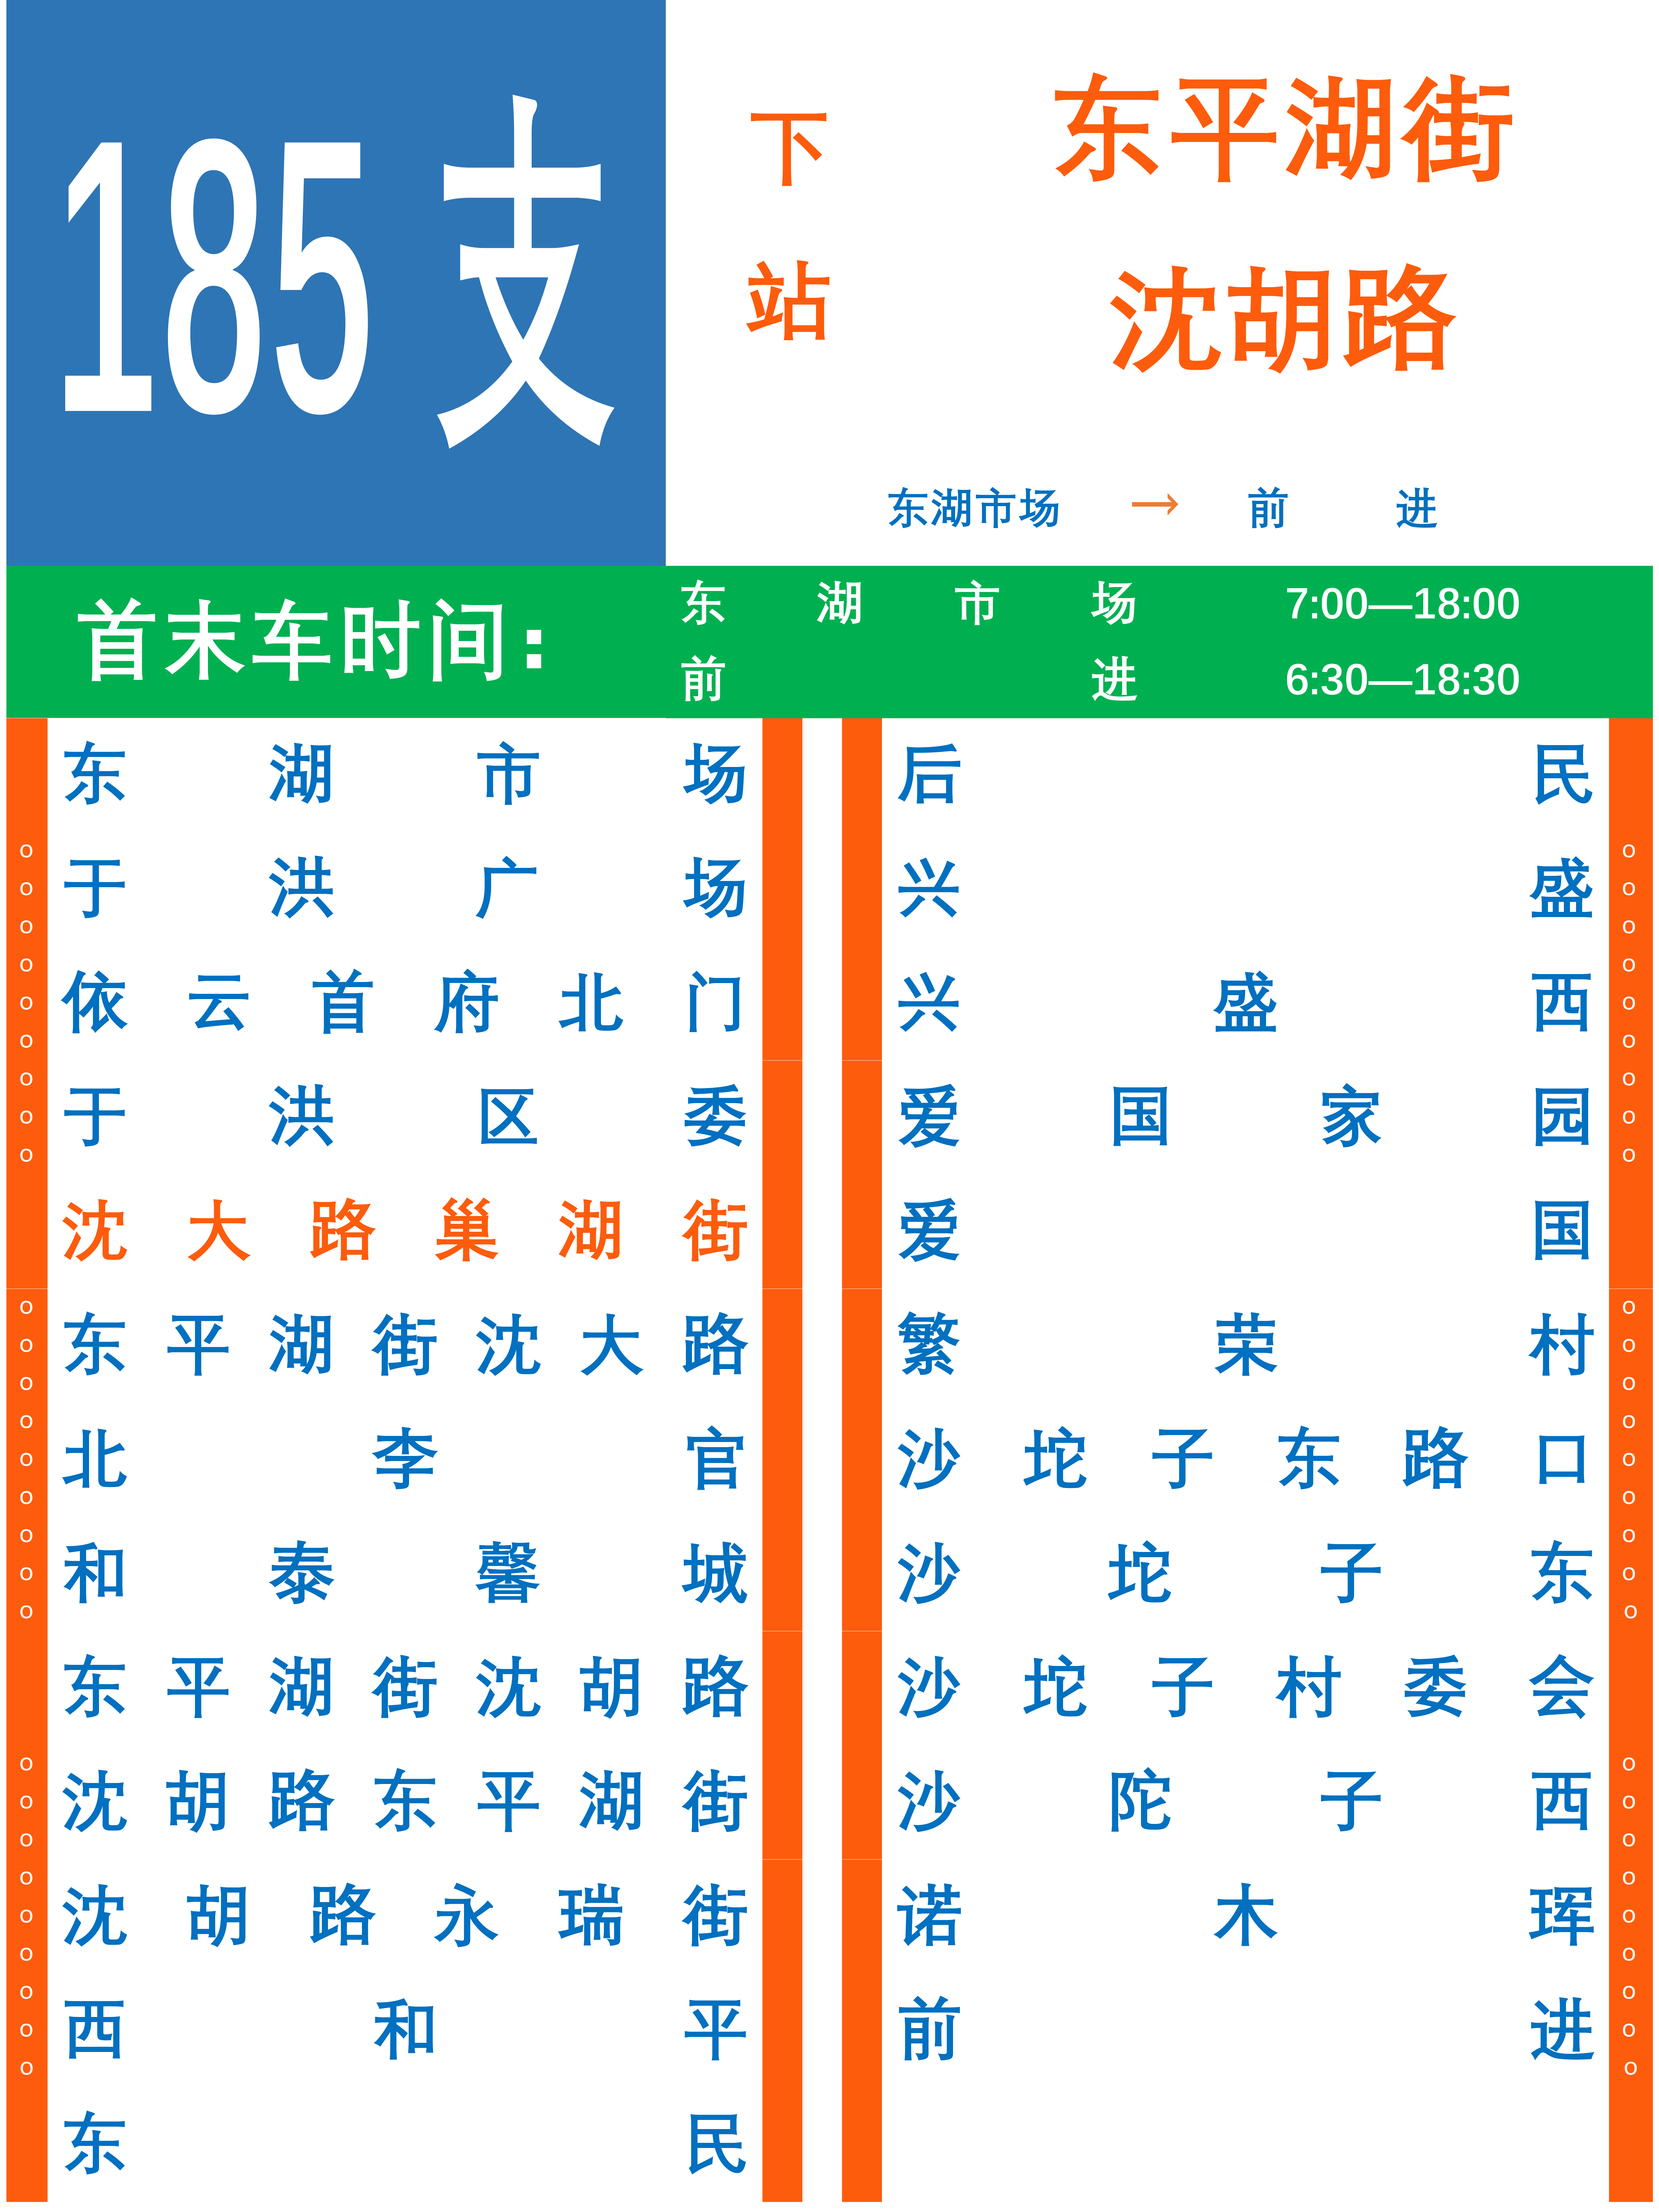 瀋陽公交185路支線(瀋陽公交185支路)